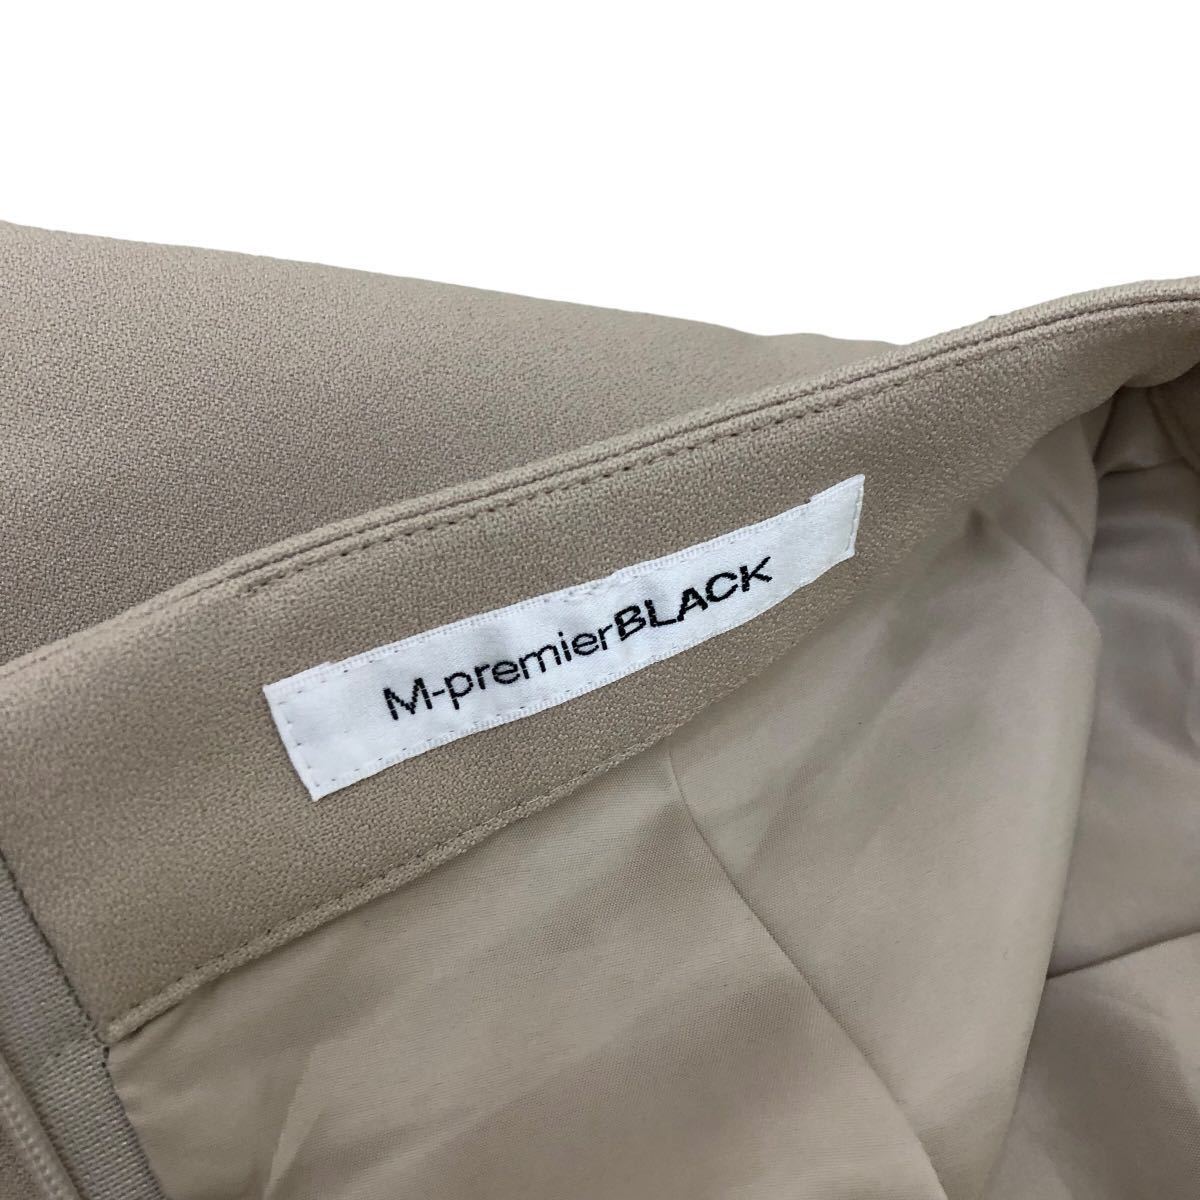 S173 日本製 M-PREMIER BLACK エムプルミエ スカート フレアスカート ロングスカート ボトムス Aライン レディース 38 ベージュ_画像5